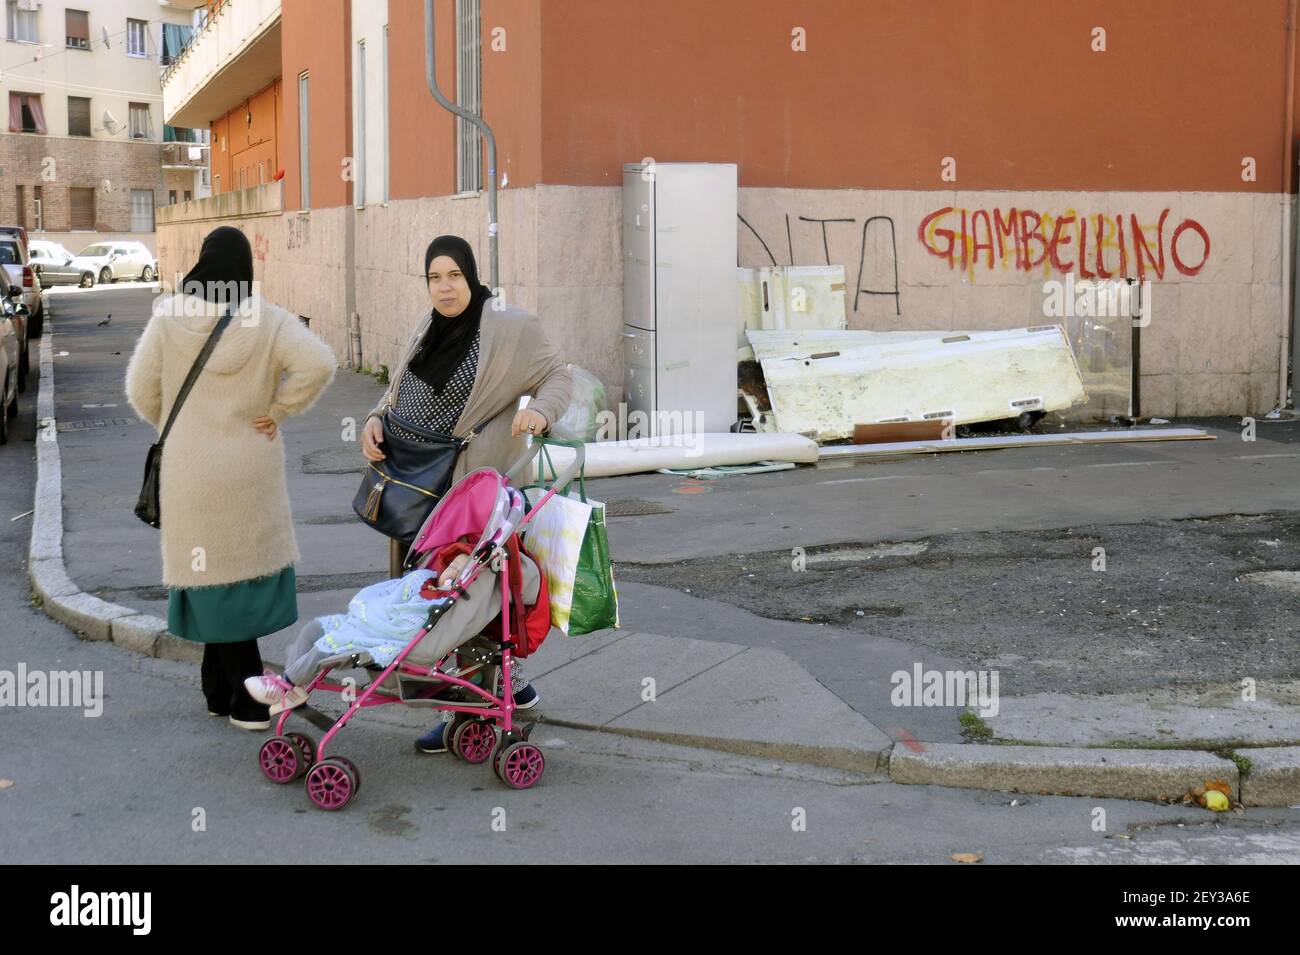 Milán (Italia), mujeres musulmanas en el distrito de Giambelino Foto de stock